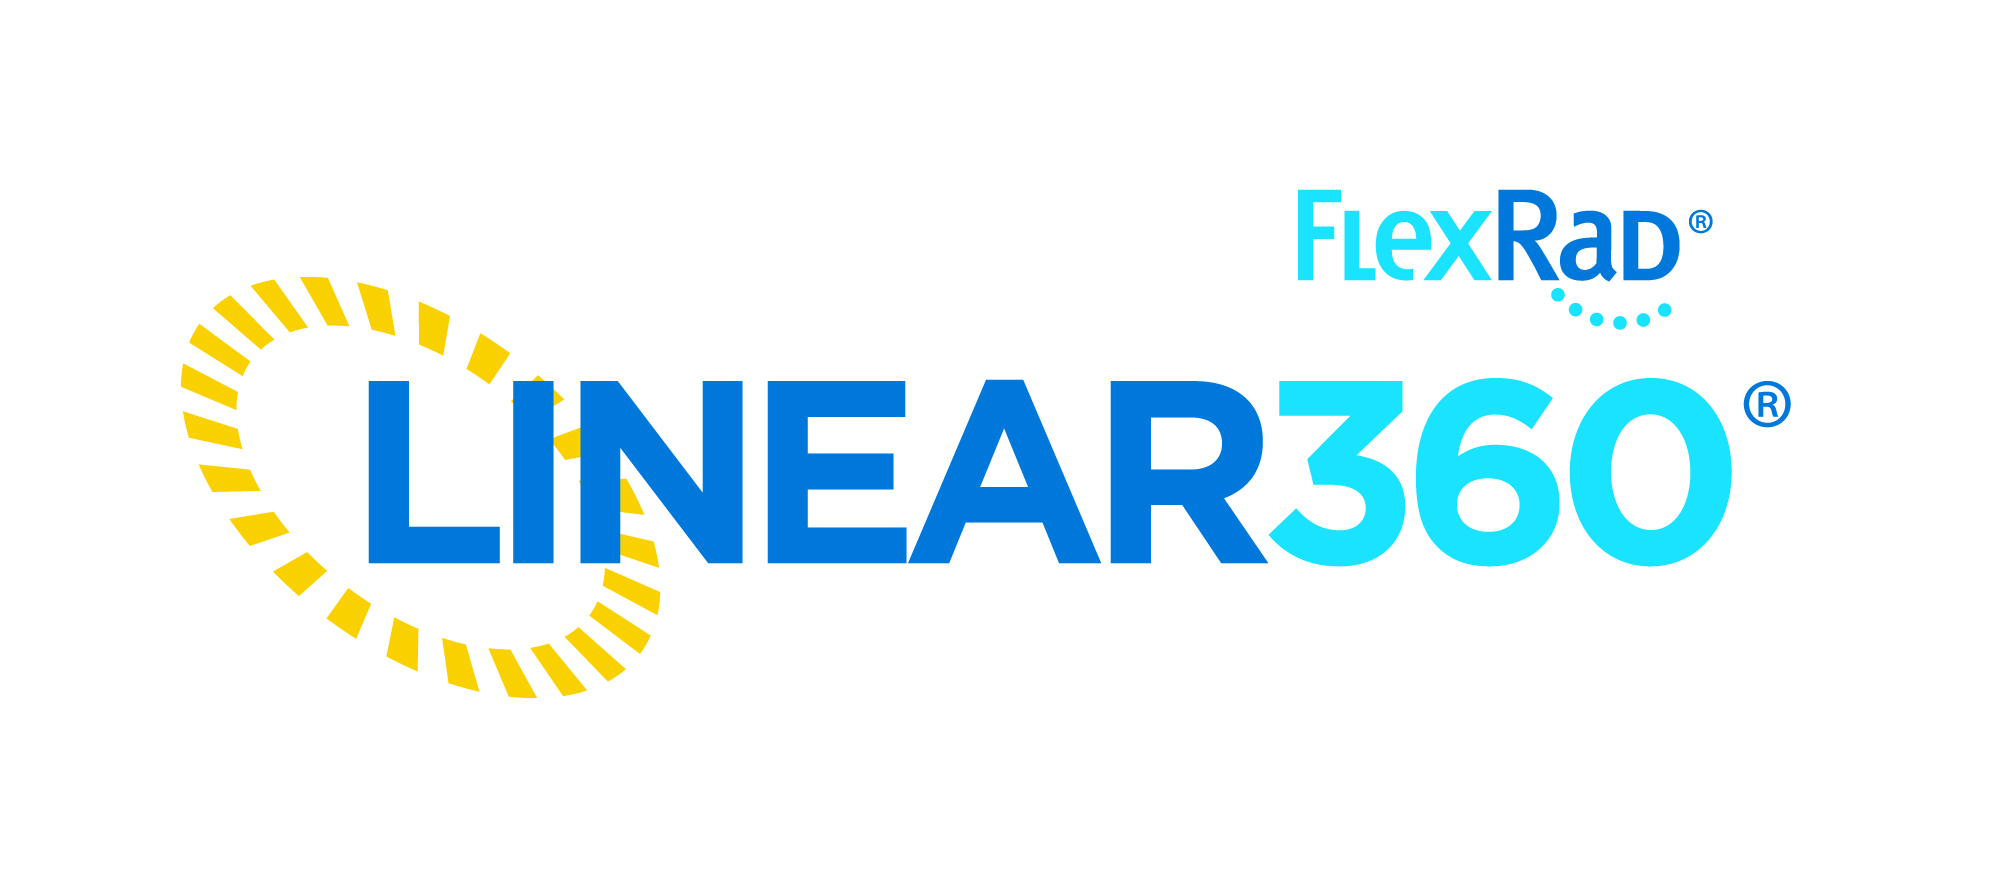 Read more about the article MetroSpec Technology® Announces FlexRad® Linear360® Enhancement